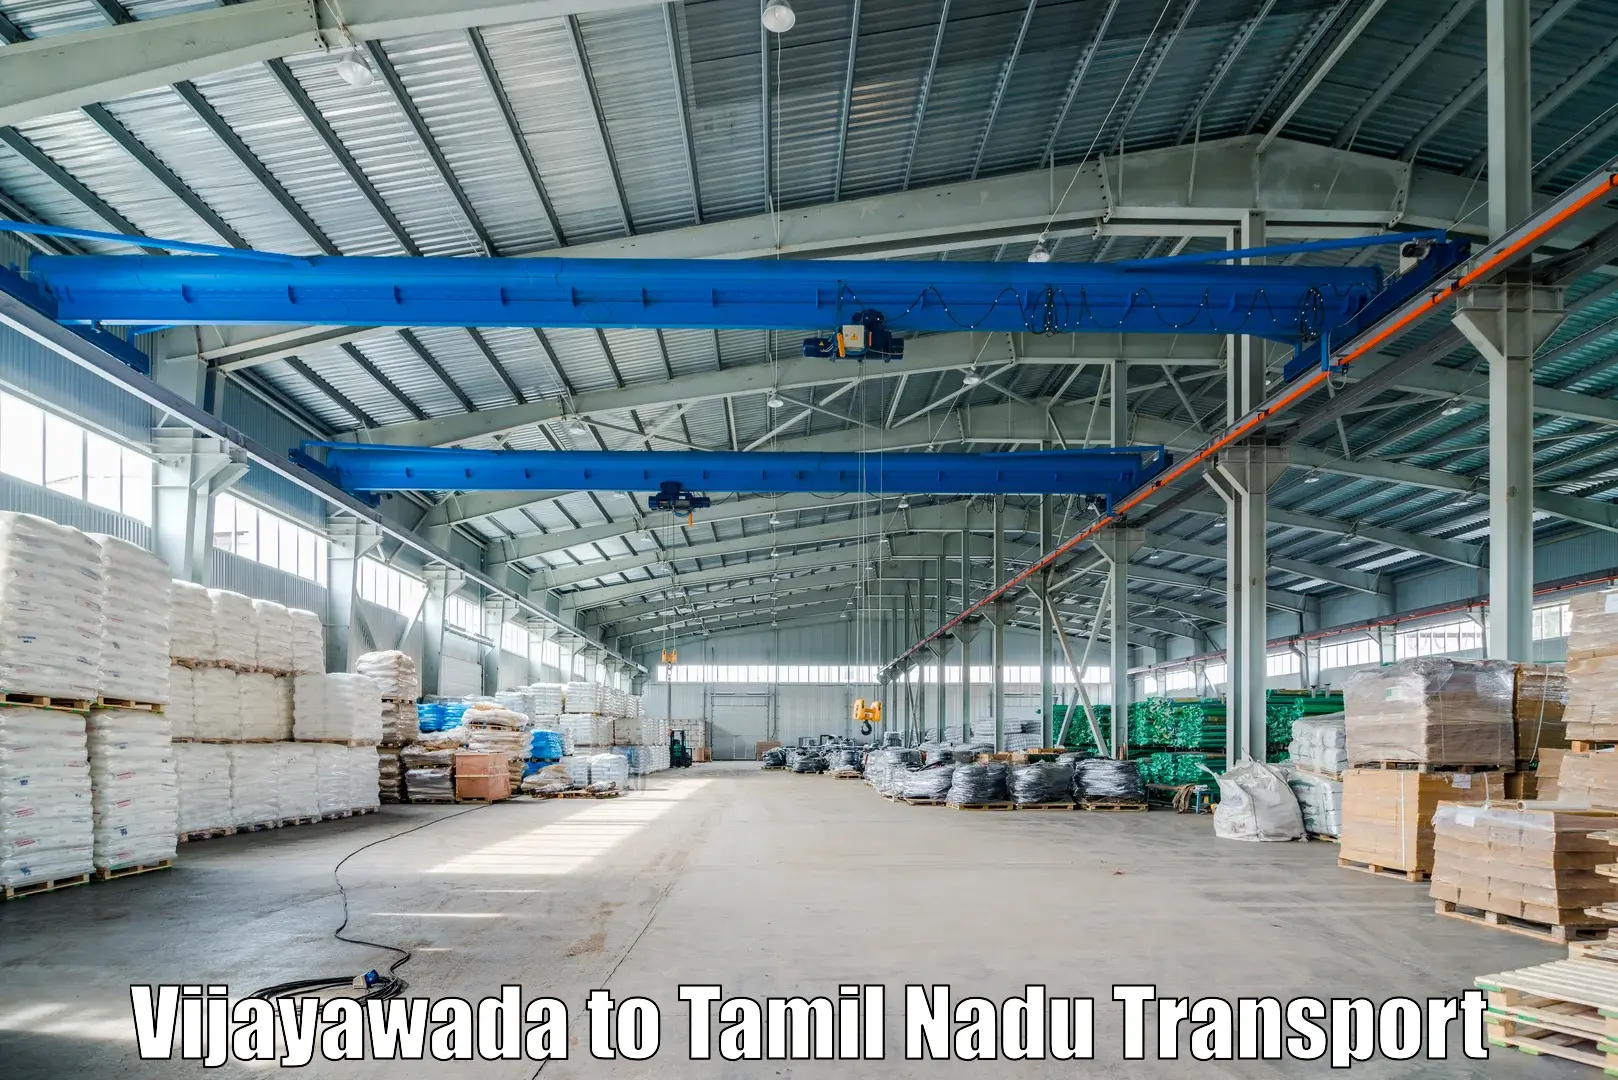 Commercial transport service Vijayawada to Tiruvallur